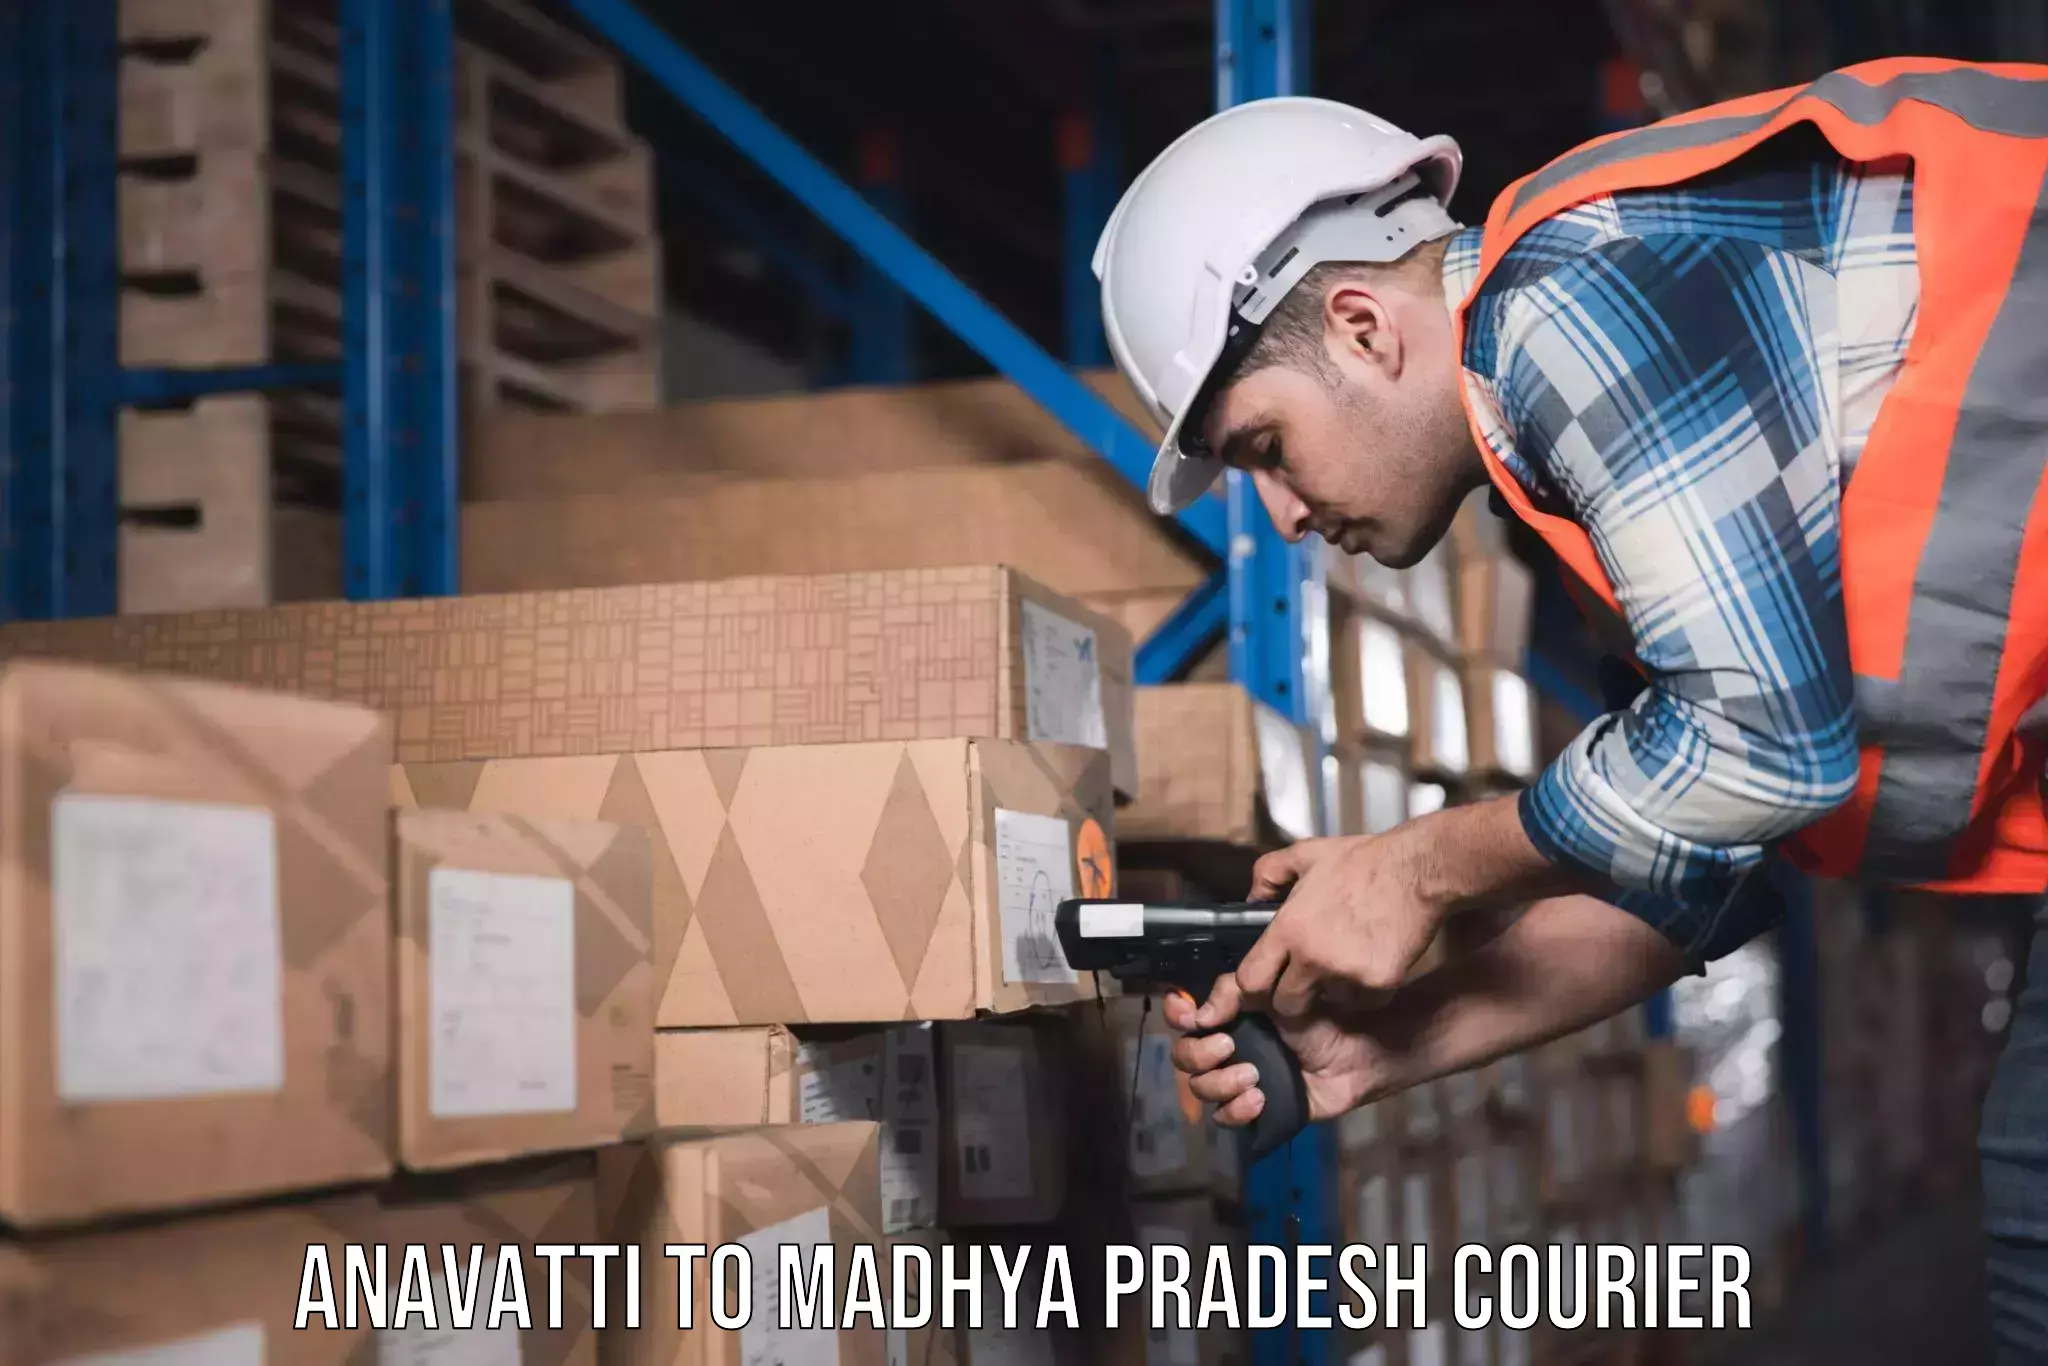 Furniture moving experts Anavatti to Madhya Pradesh